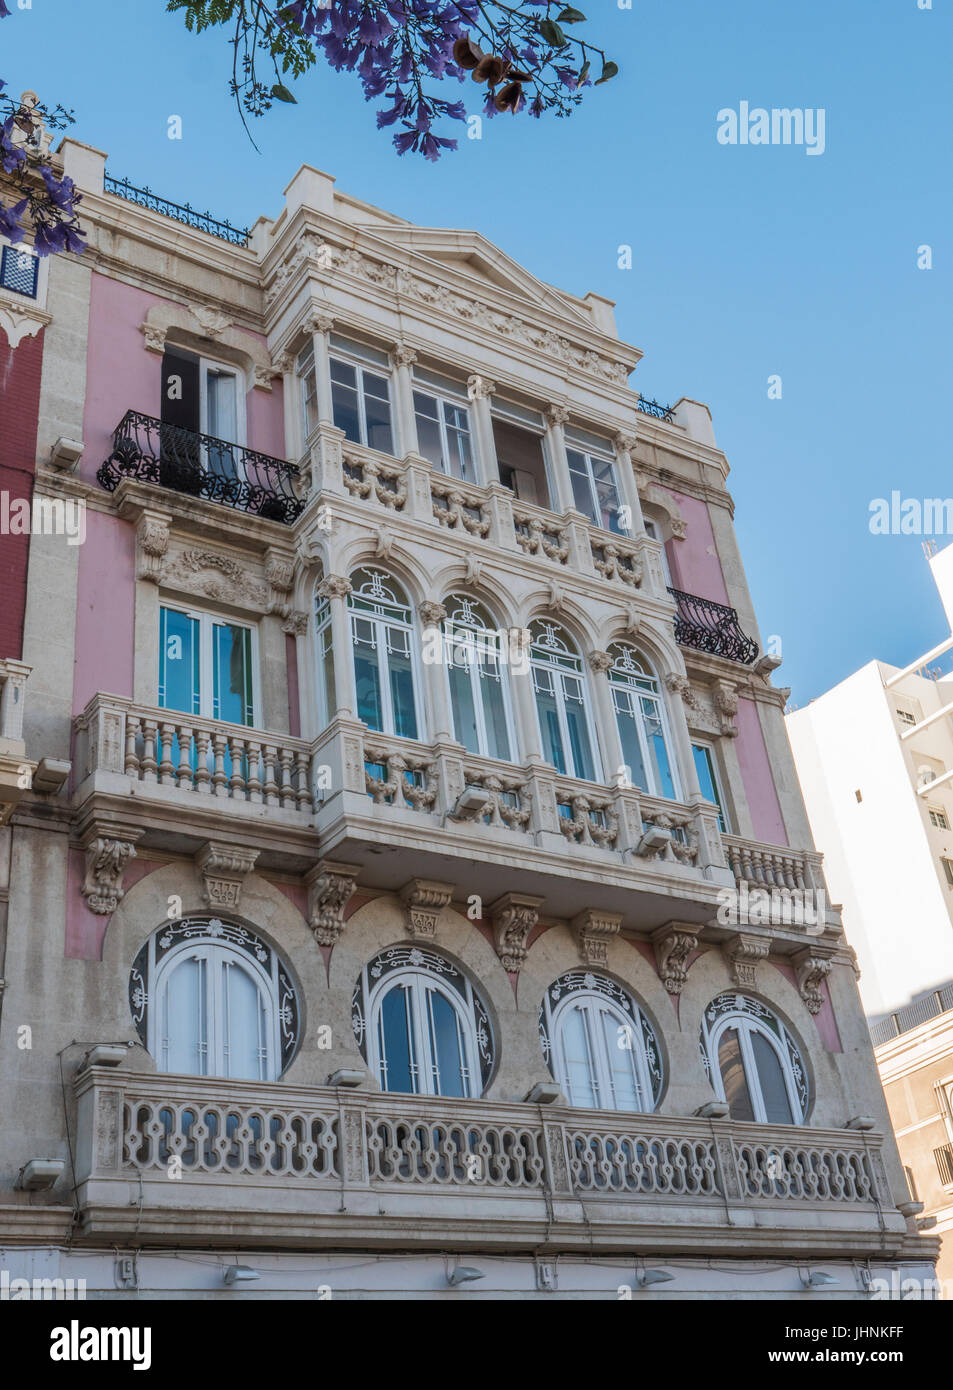 Dettaglio dei tipici balconi decorati in stile neoclassico, Almeria, Andalusia, Spagna Foto Stock